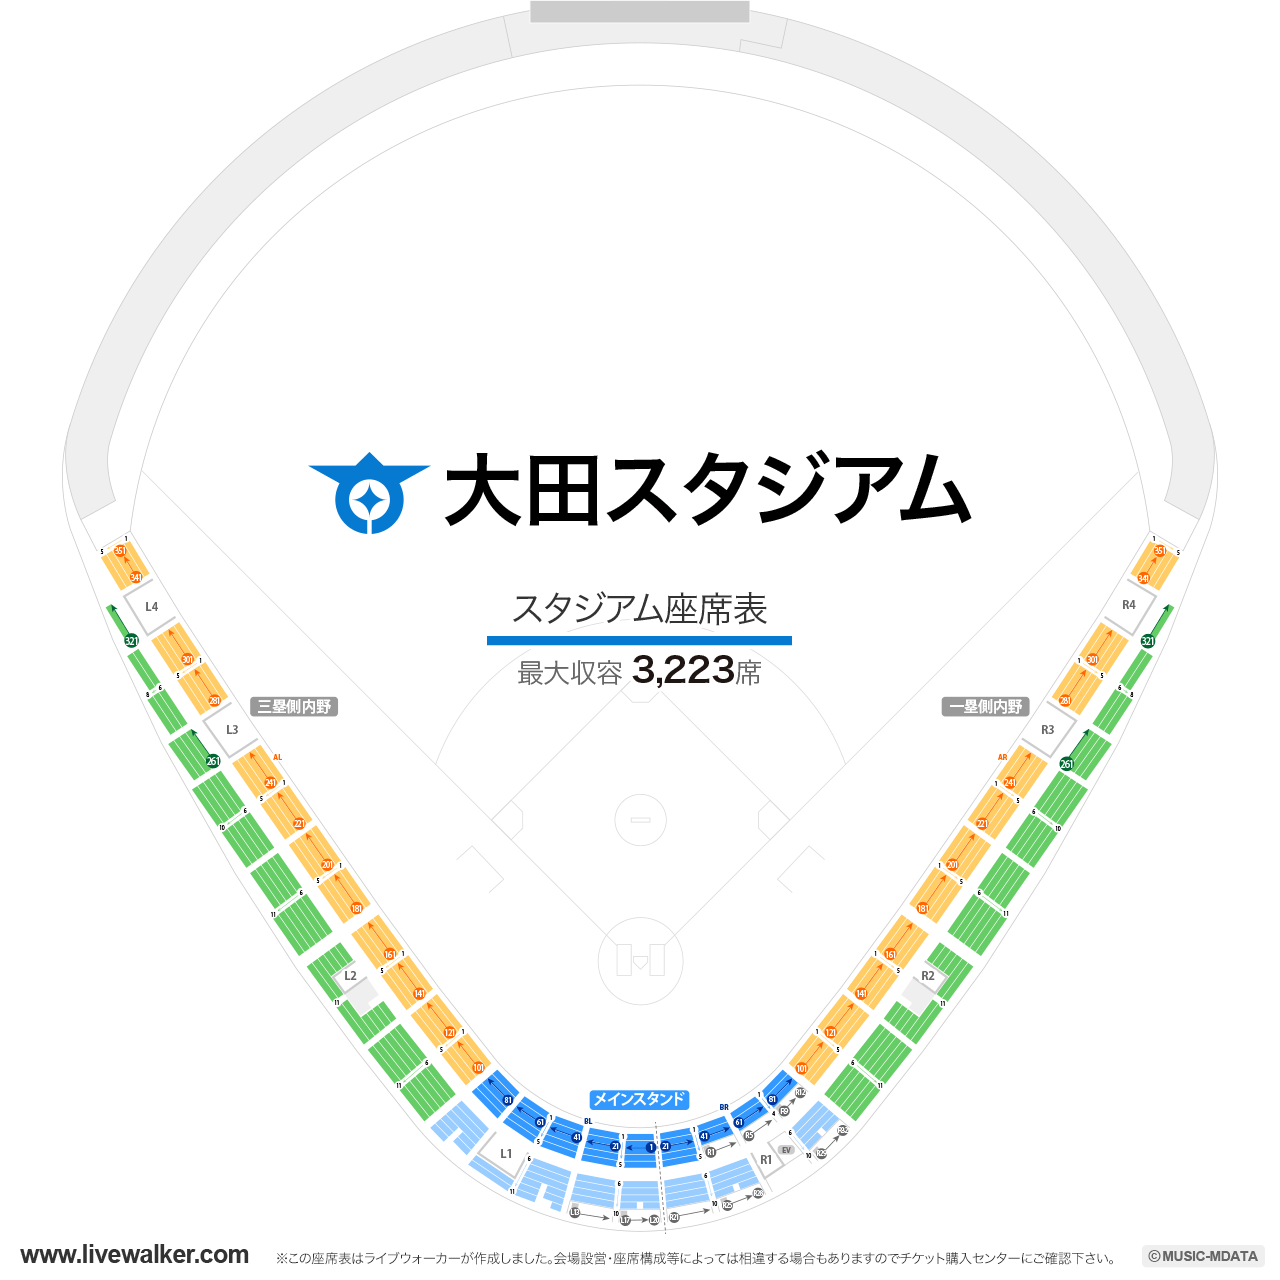 大田スタジアムの座席表